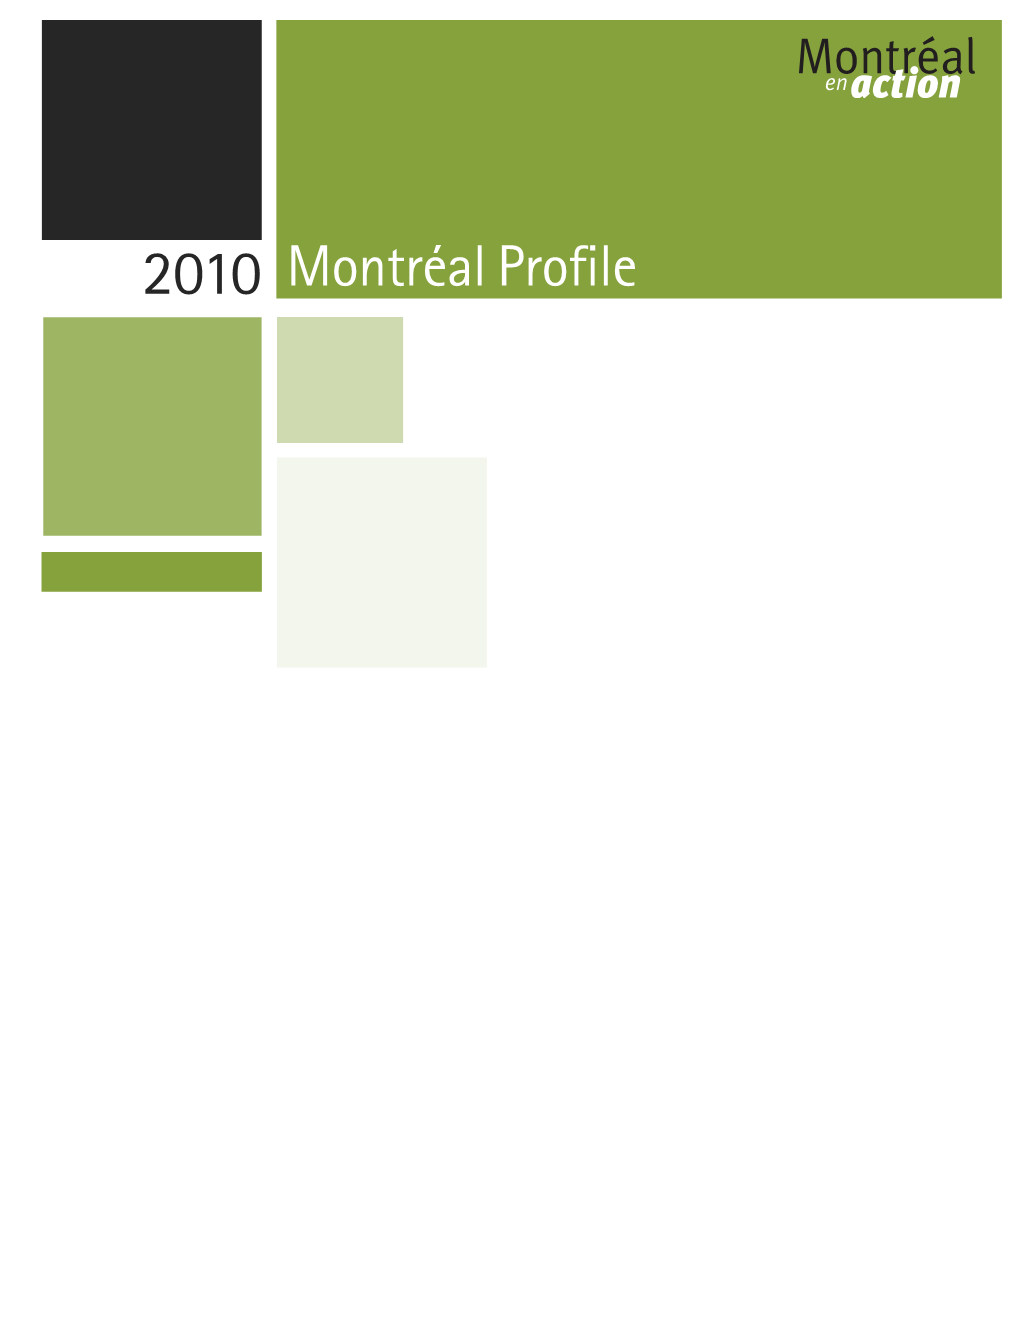 2010 Budget – Montréal Profile